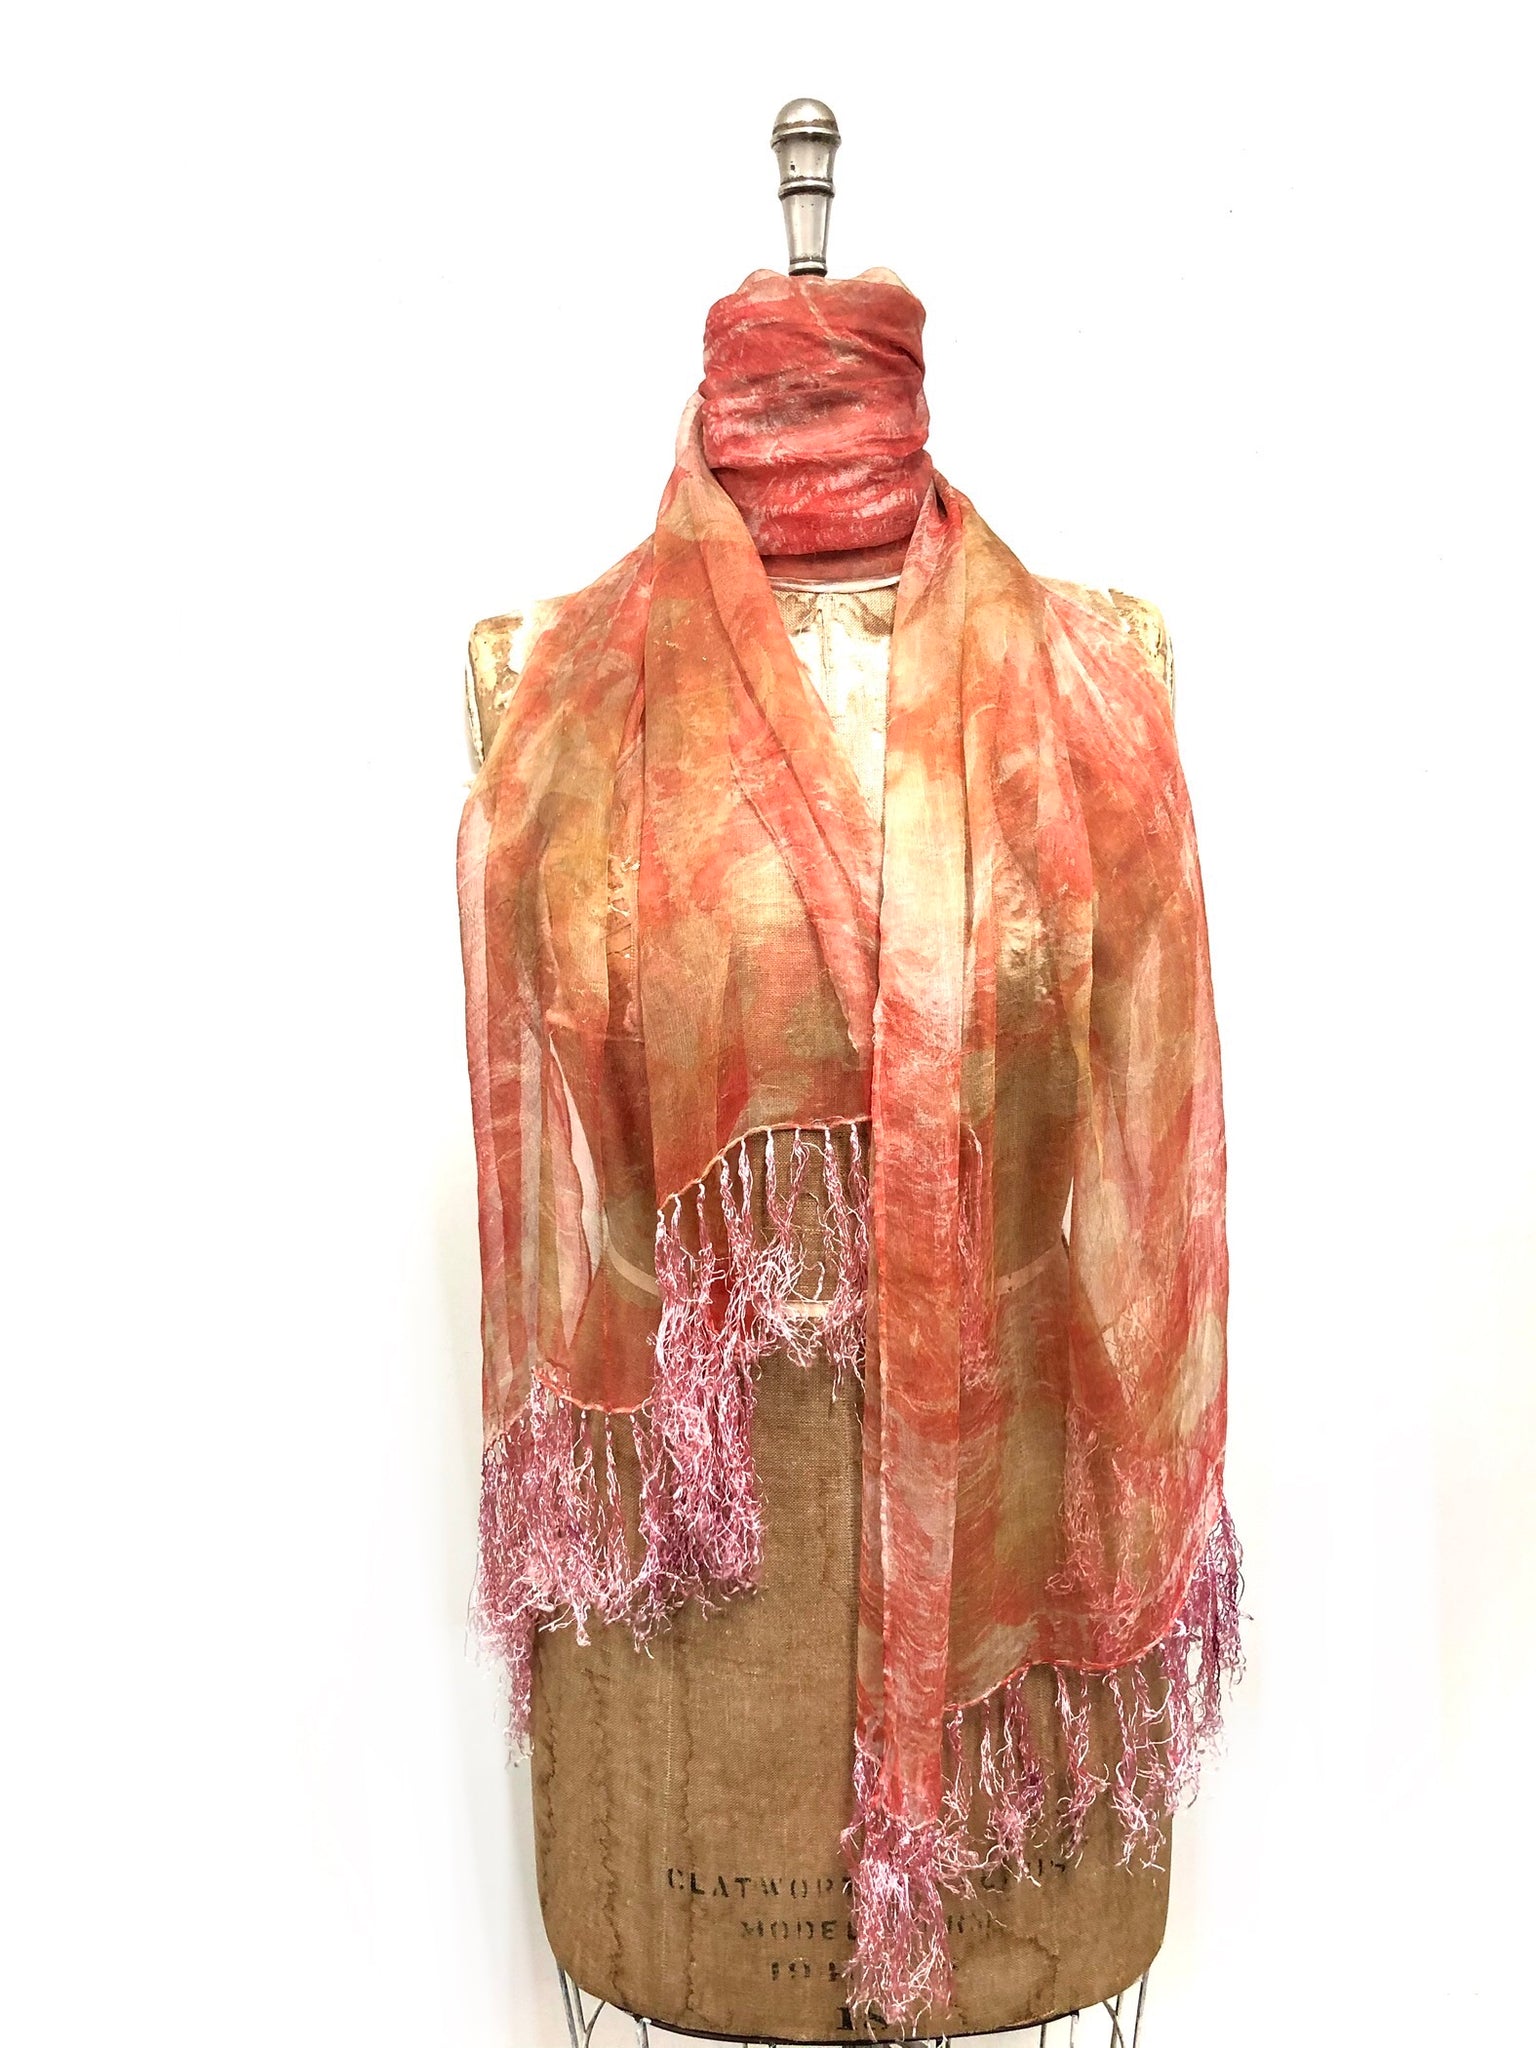 Ecoprinted silk scarf #24